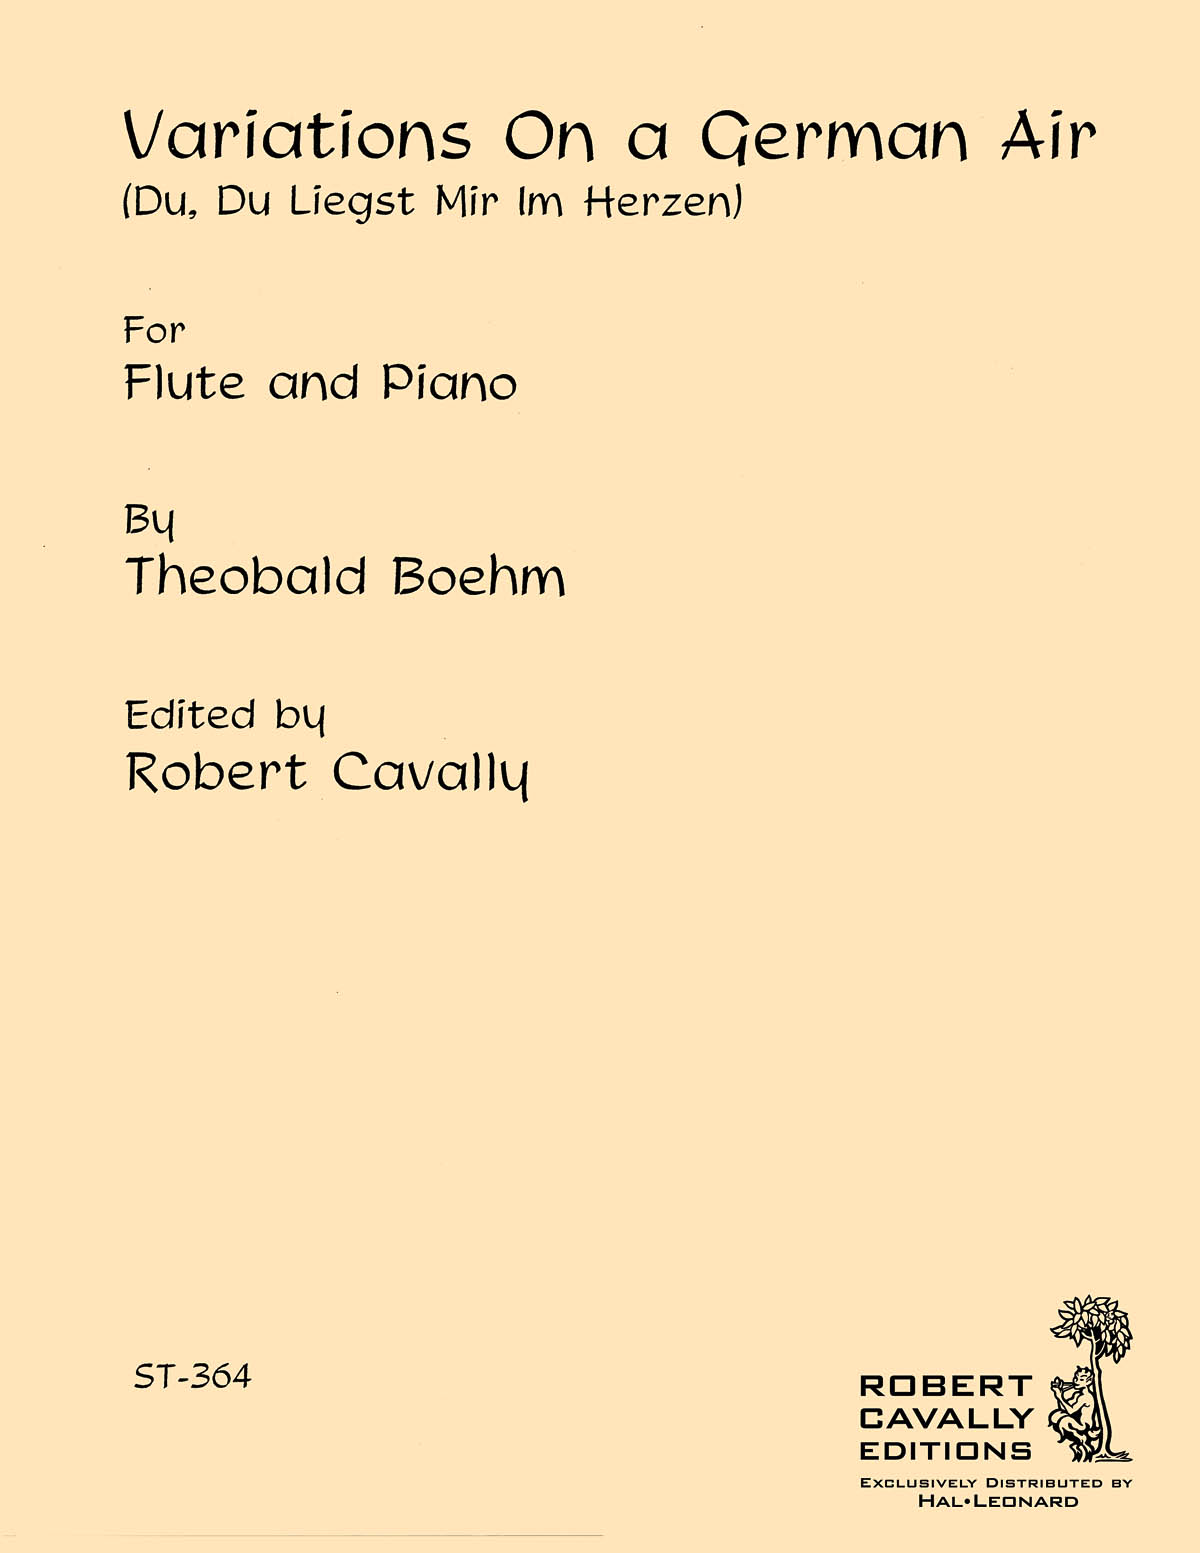 Theobald Bohm: Variations on a German Air op. 22